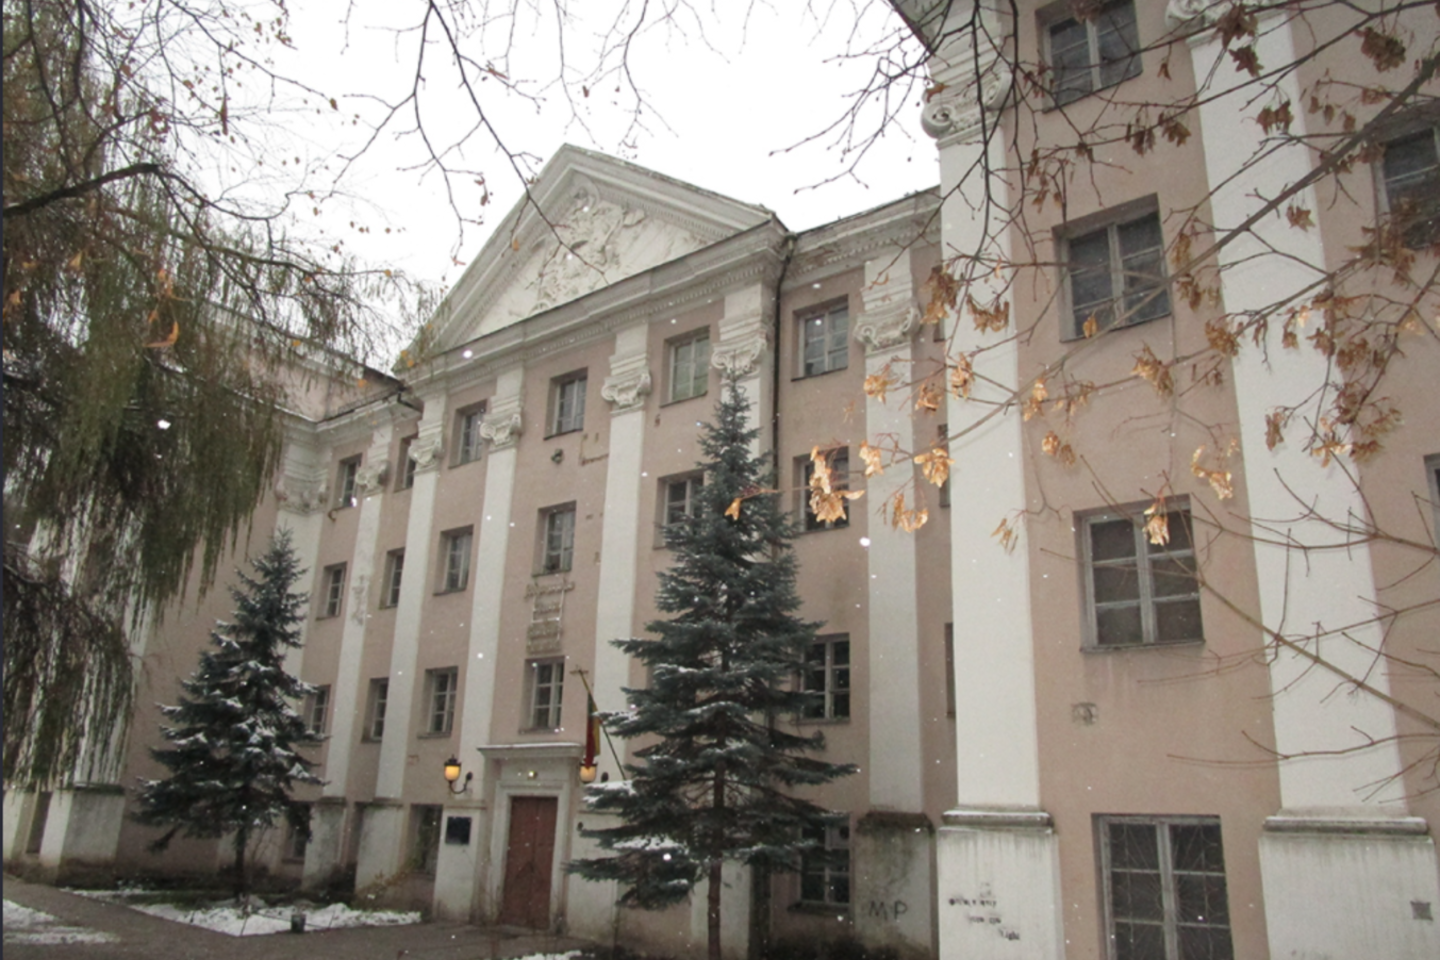 Kovo 17 d. organizuoto Lietuvos muzikos ir teatro akademijai (LMTA) priklausančio Sluškų rūmų pastatų komplekso aukcionas laikomas neįvykusiu ir skelbiamas pakartotinis.<br>LMTA nuotr.